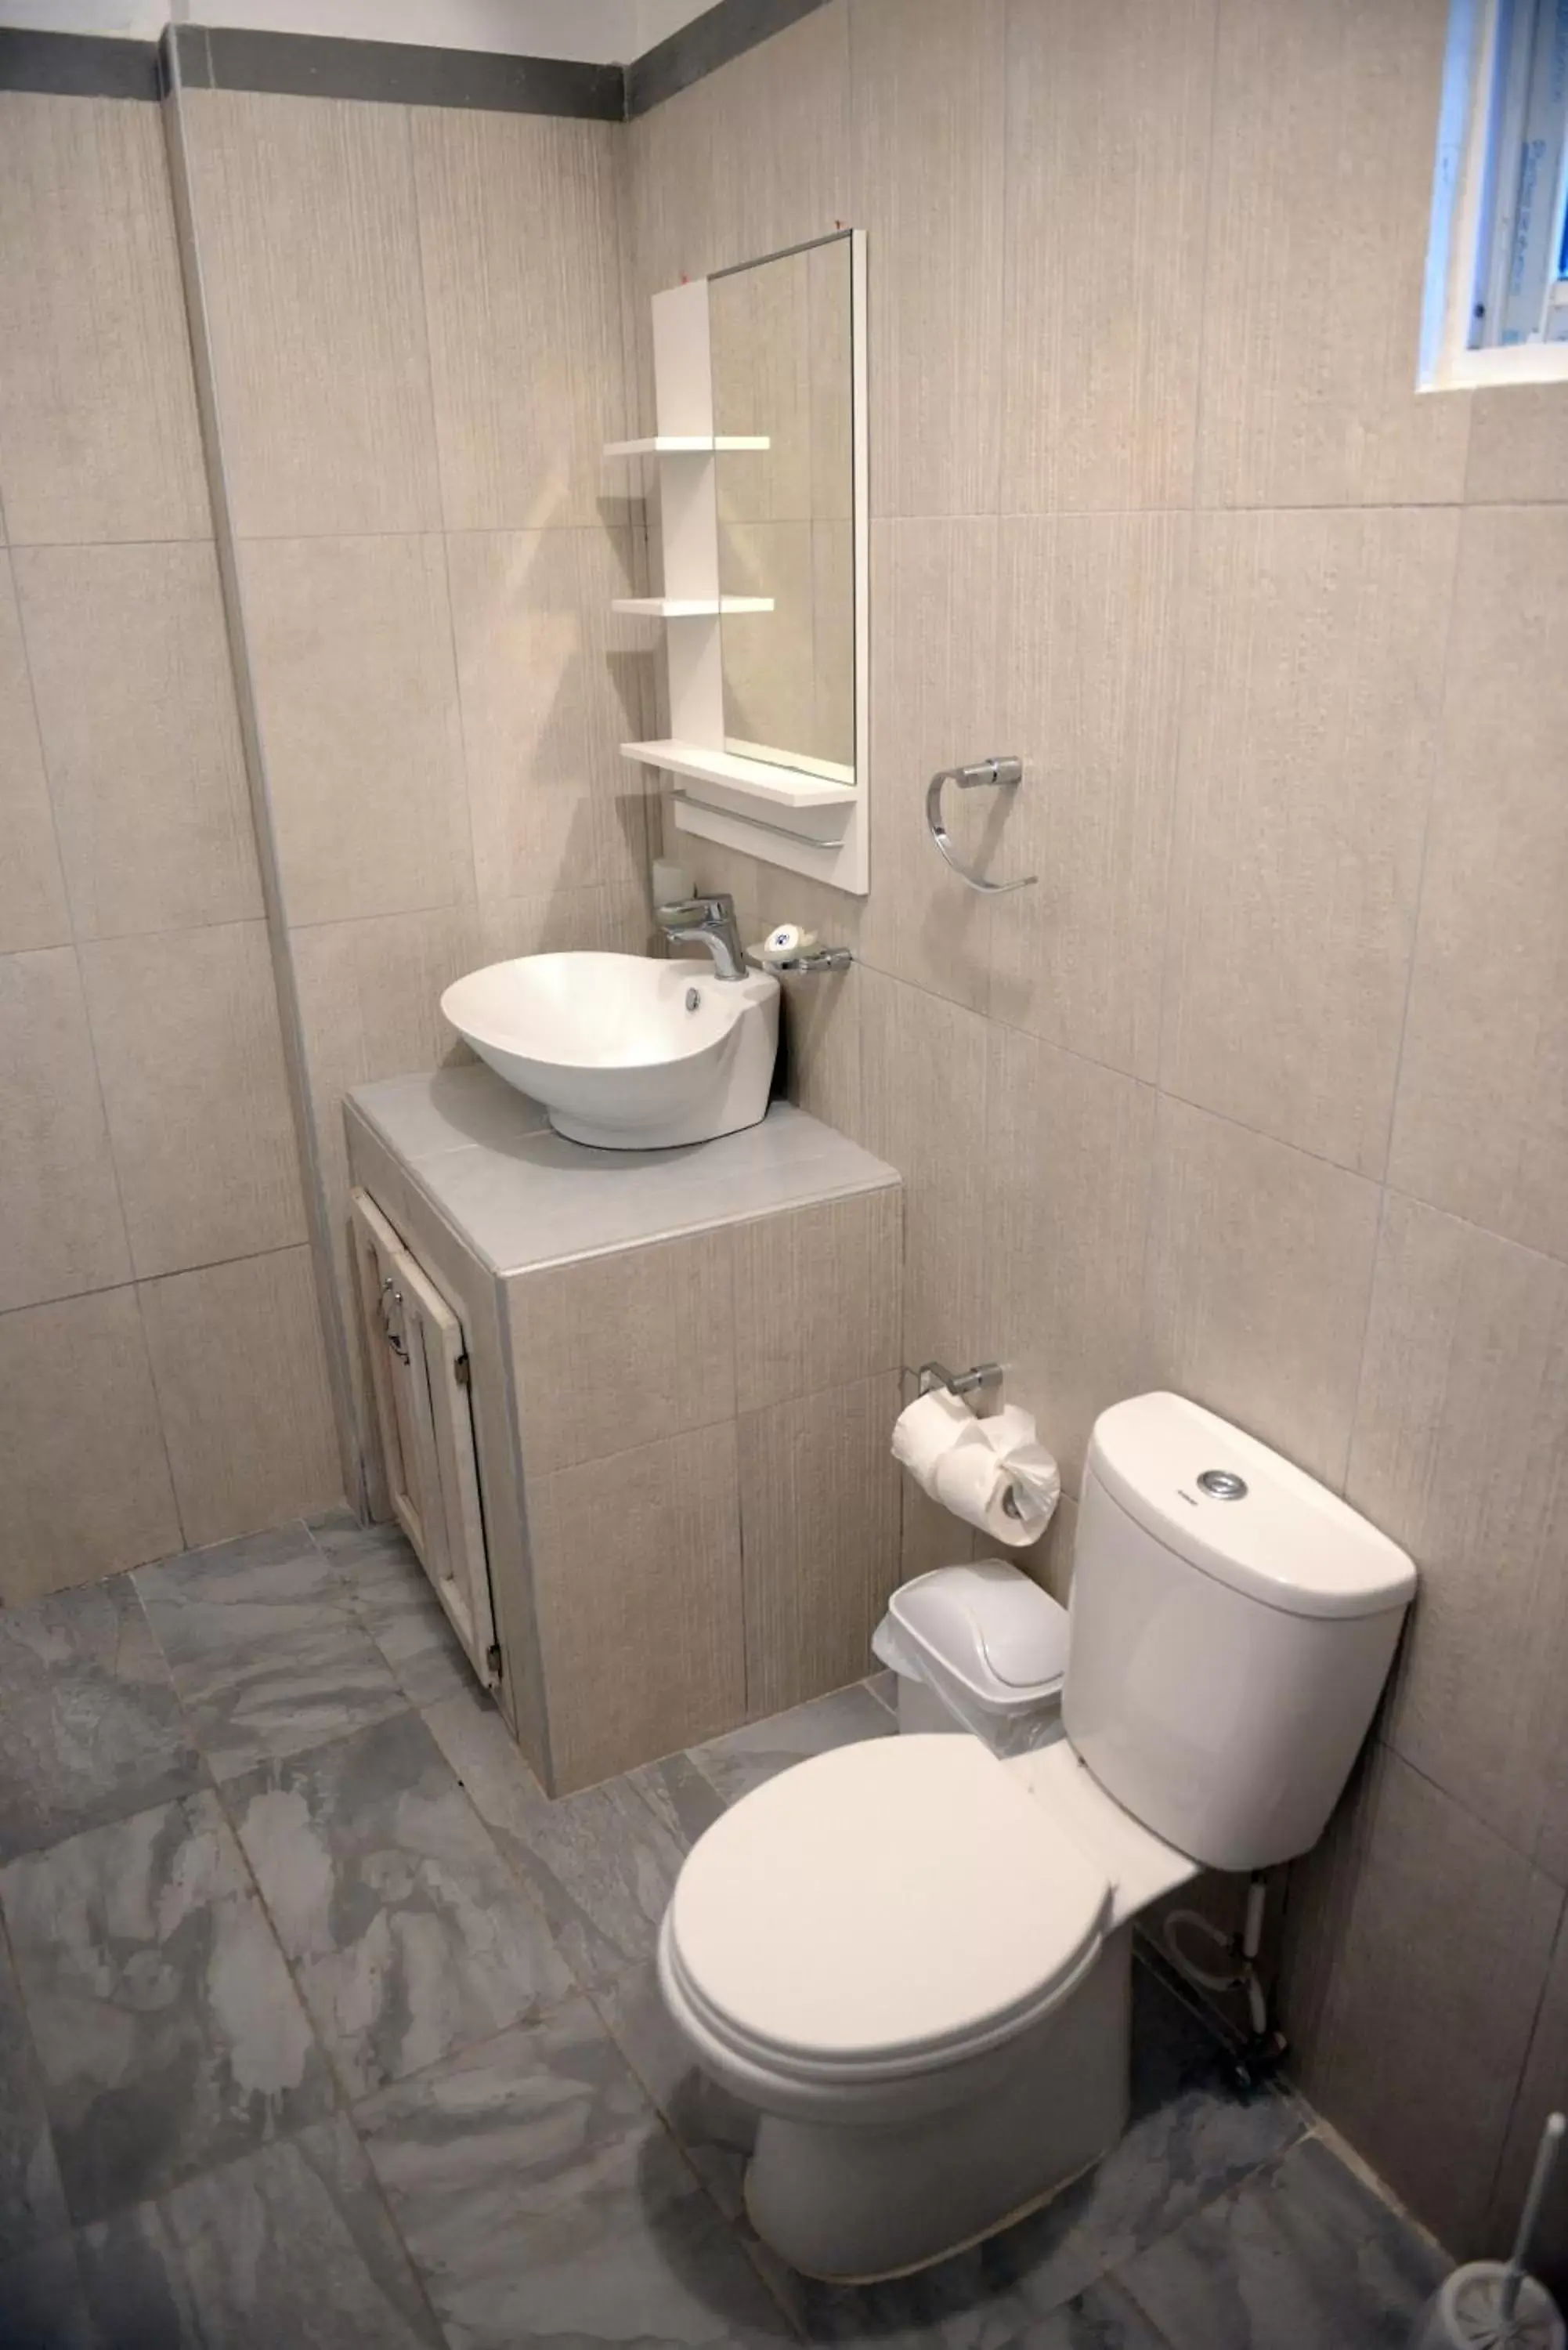 Toilet, Bathroom in Batey Hotel Boutique